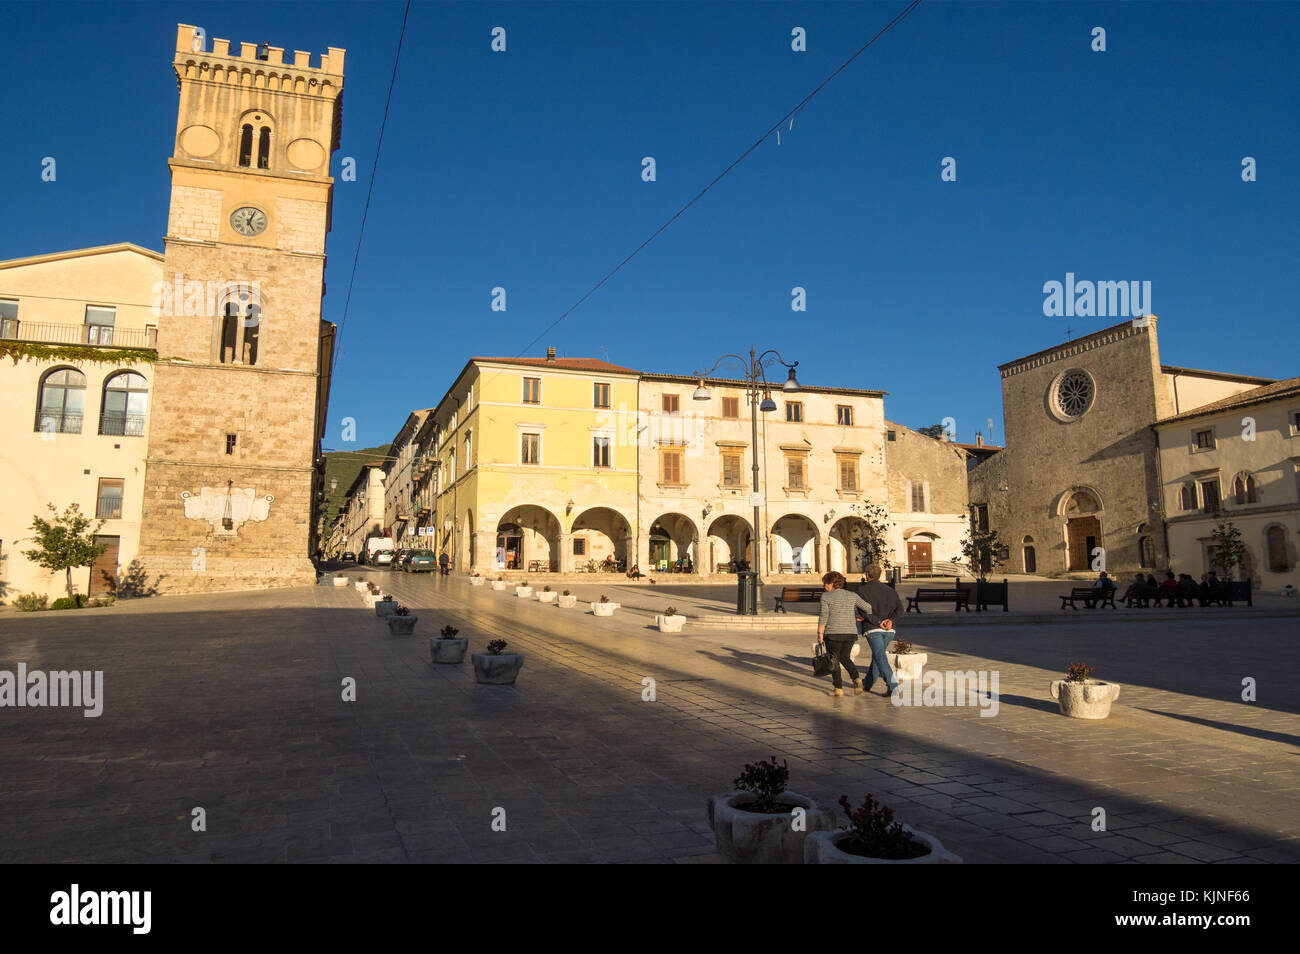 Cittaducale (Italien) - das historische Zentrum von einem alten und sehr kleinen Stone Town in Sabina Region, Provinz von Rieti, Italien Stockfoto